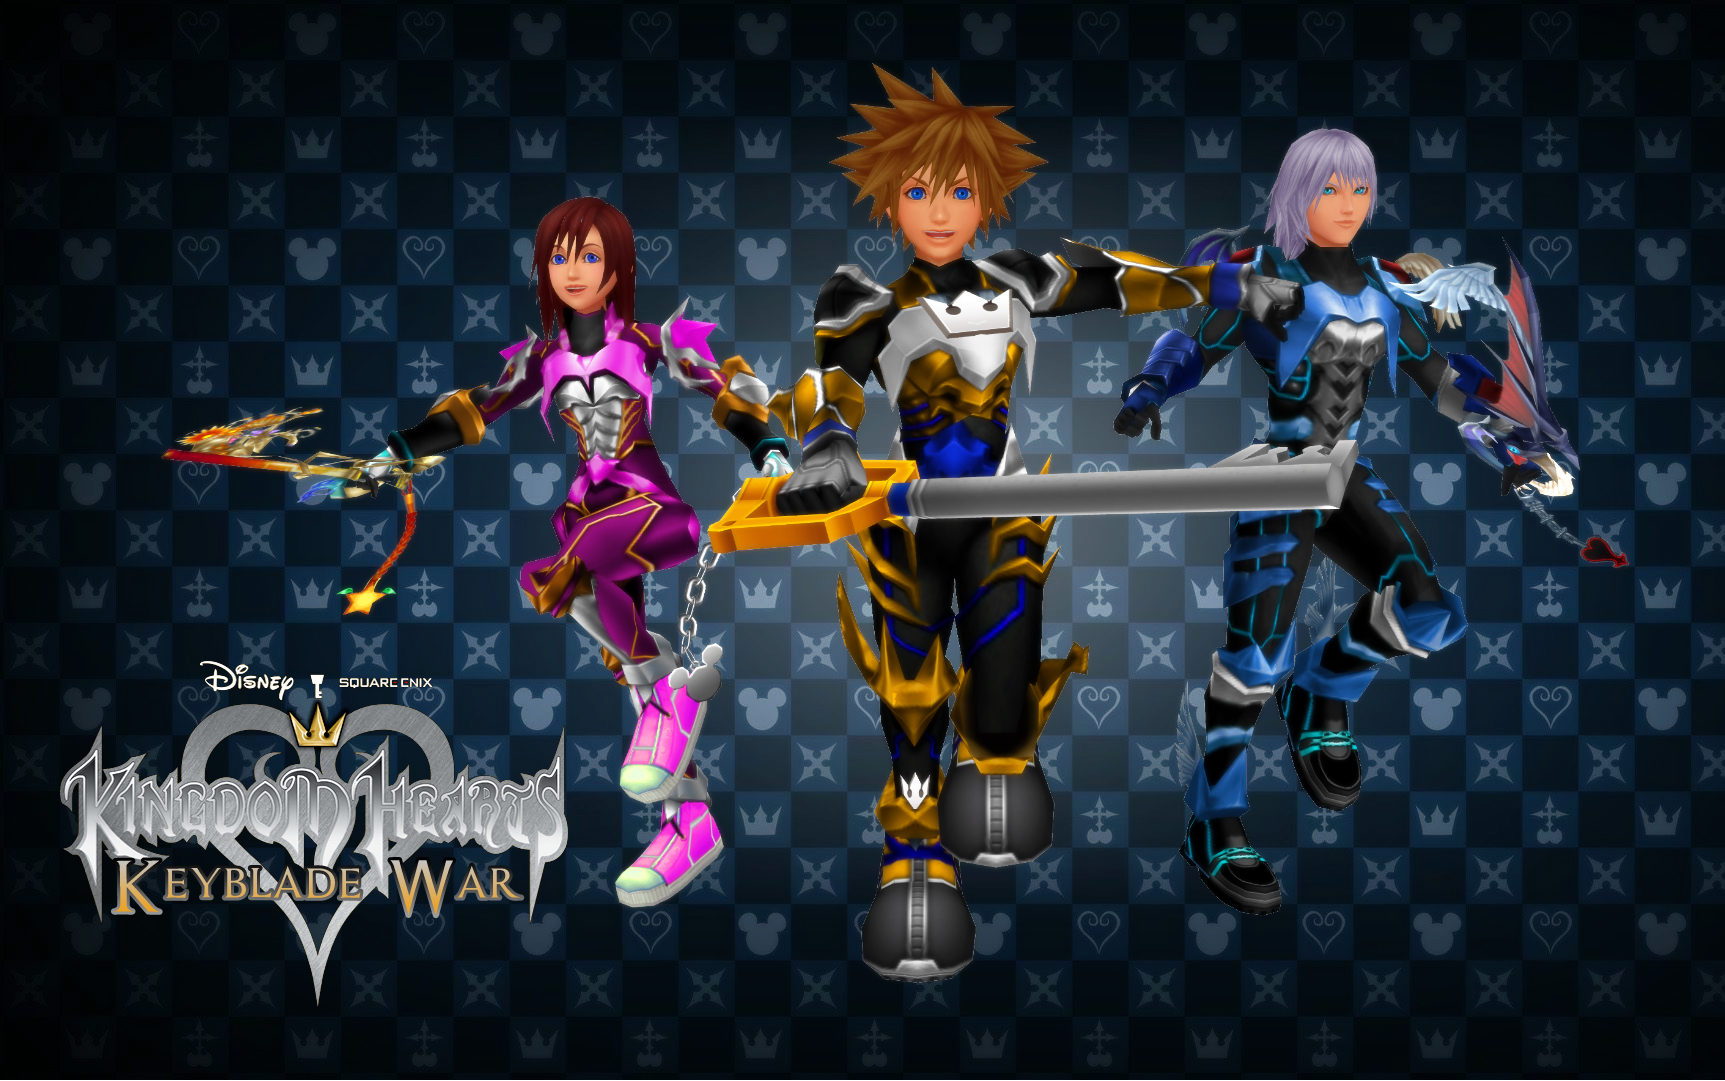 Kingdom Hearts Keyblade War Custom Wallpaper By Todsen19